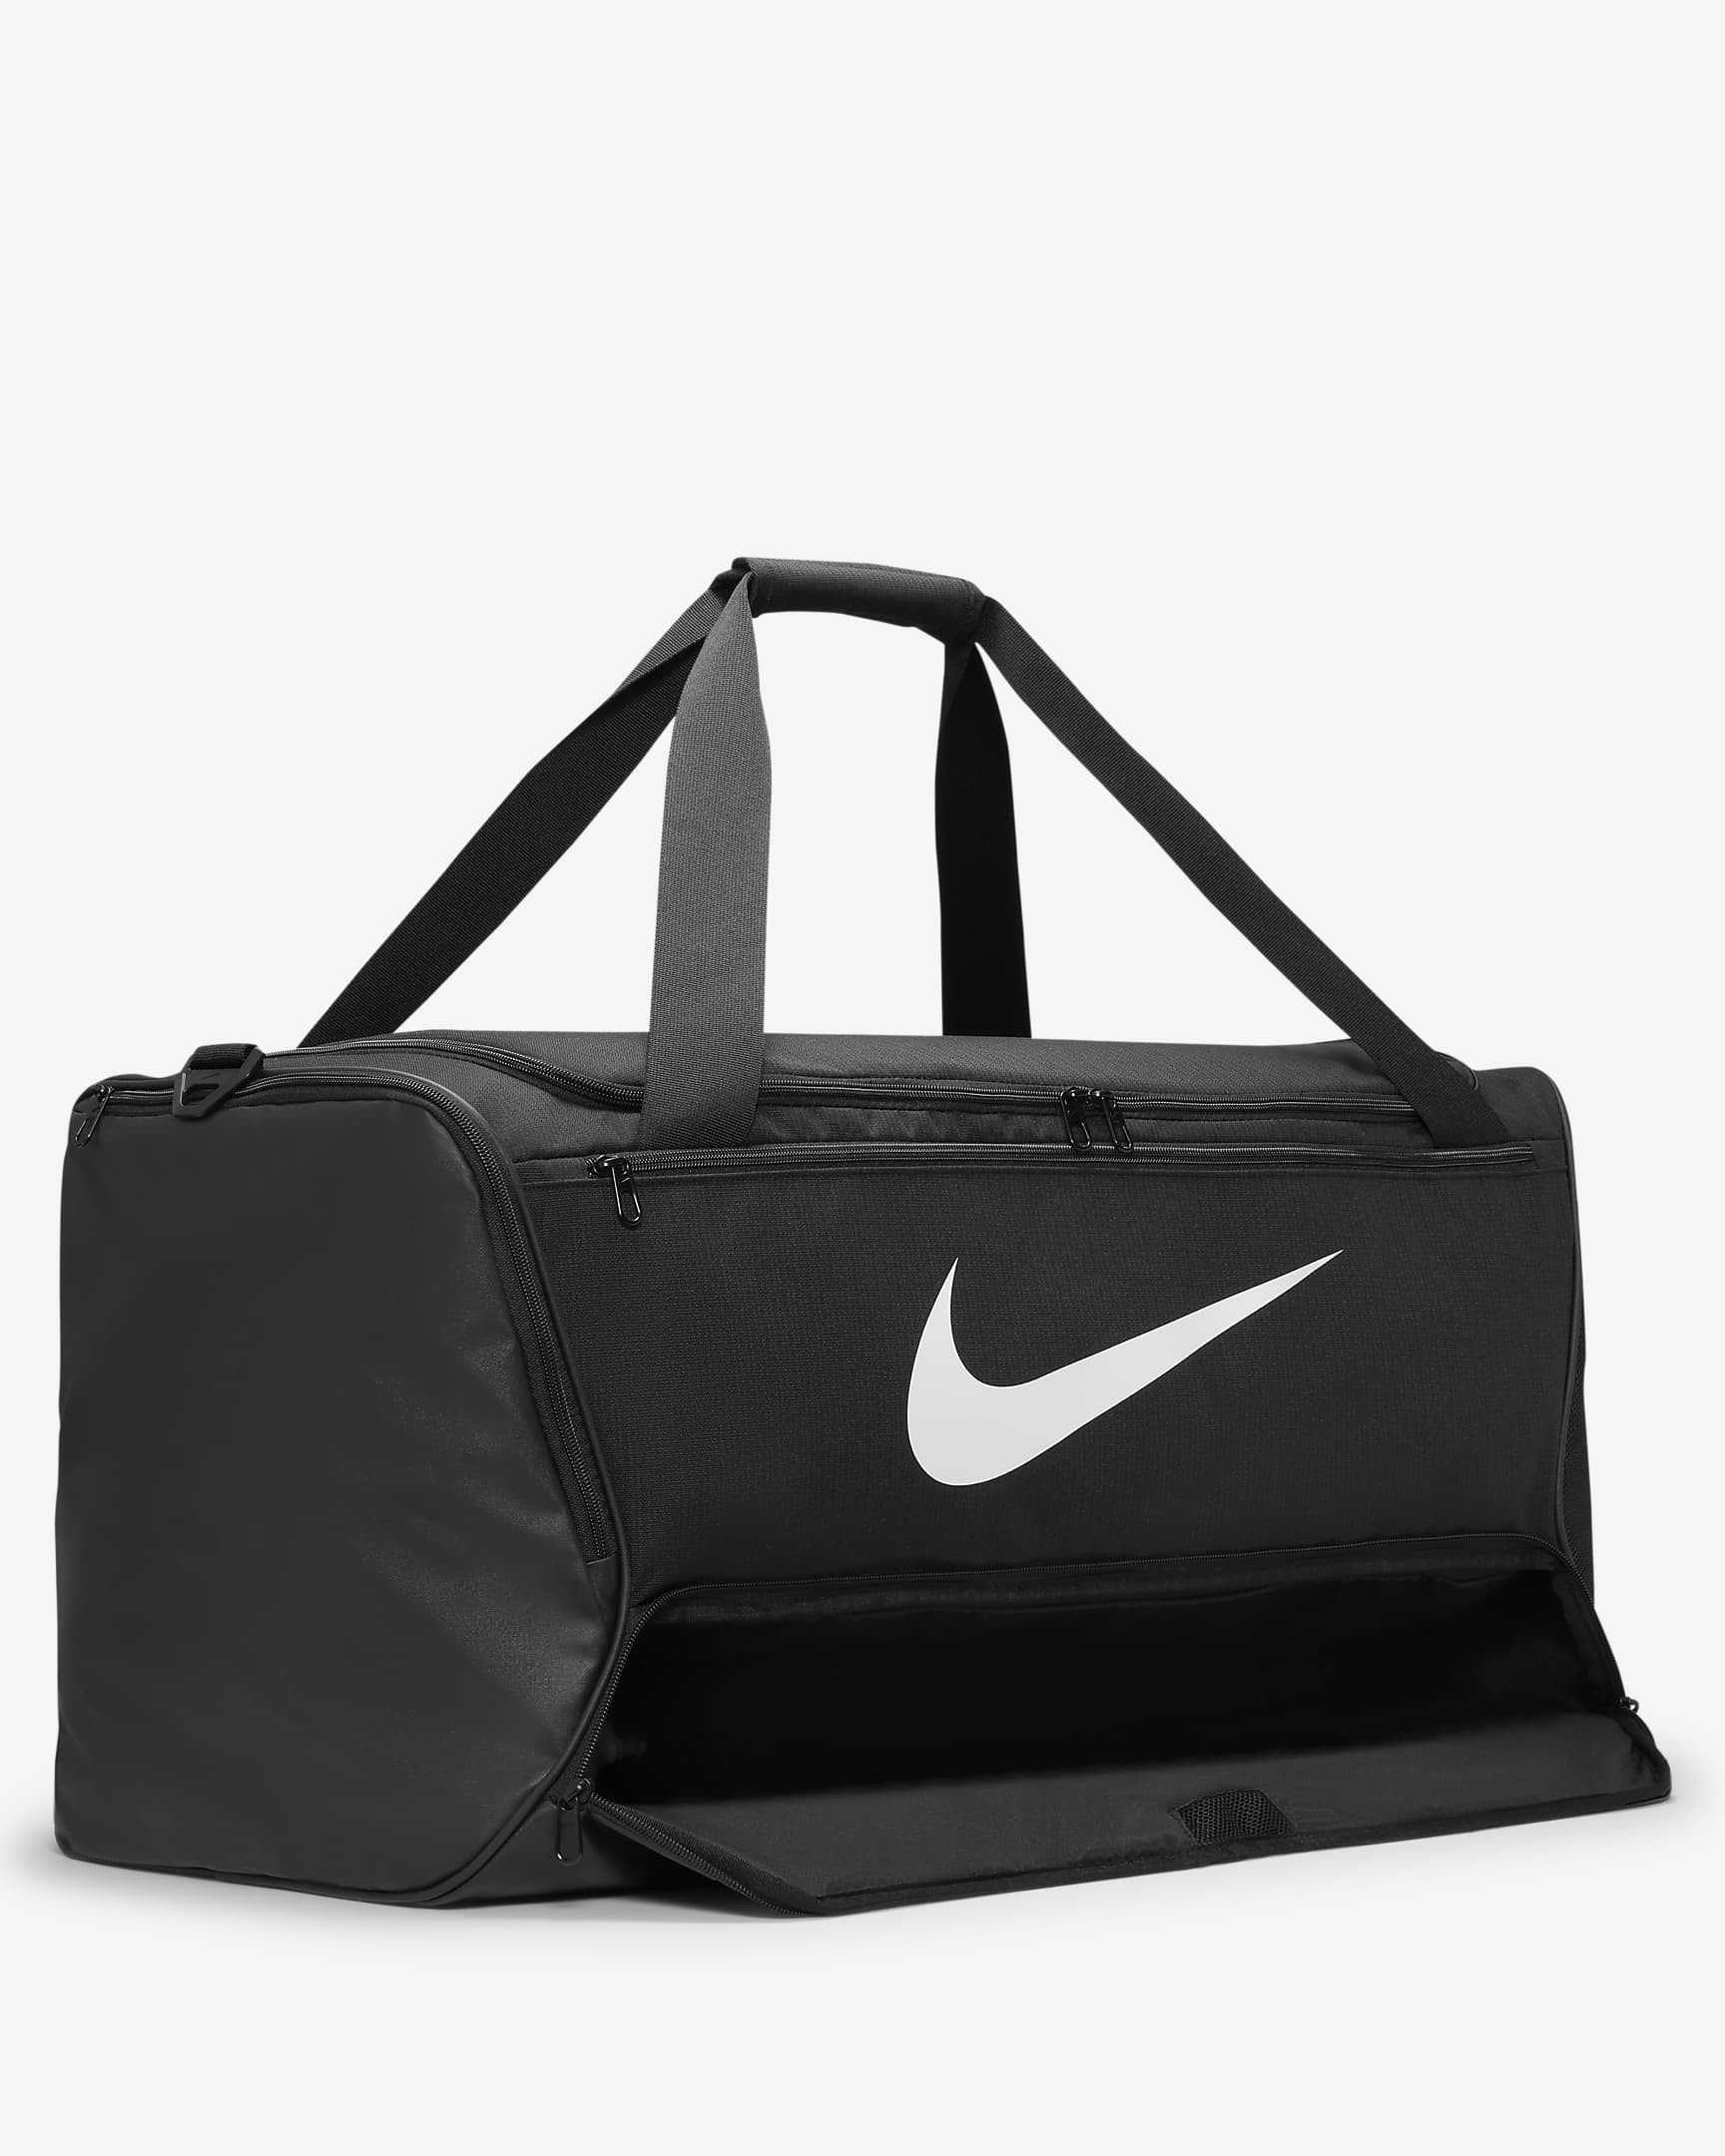 Nike Brasilia 9.5 Trainingstas (large, 95 liter) - Zwart/Zwart/Wit